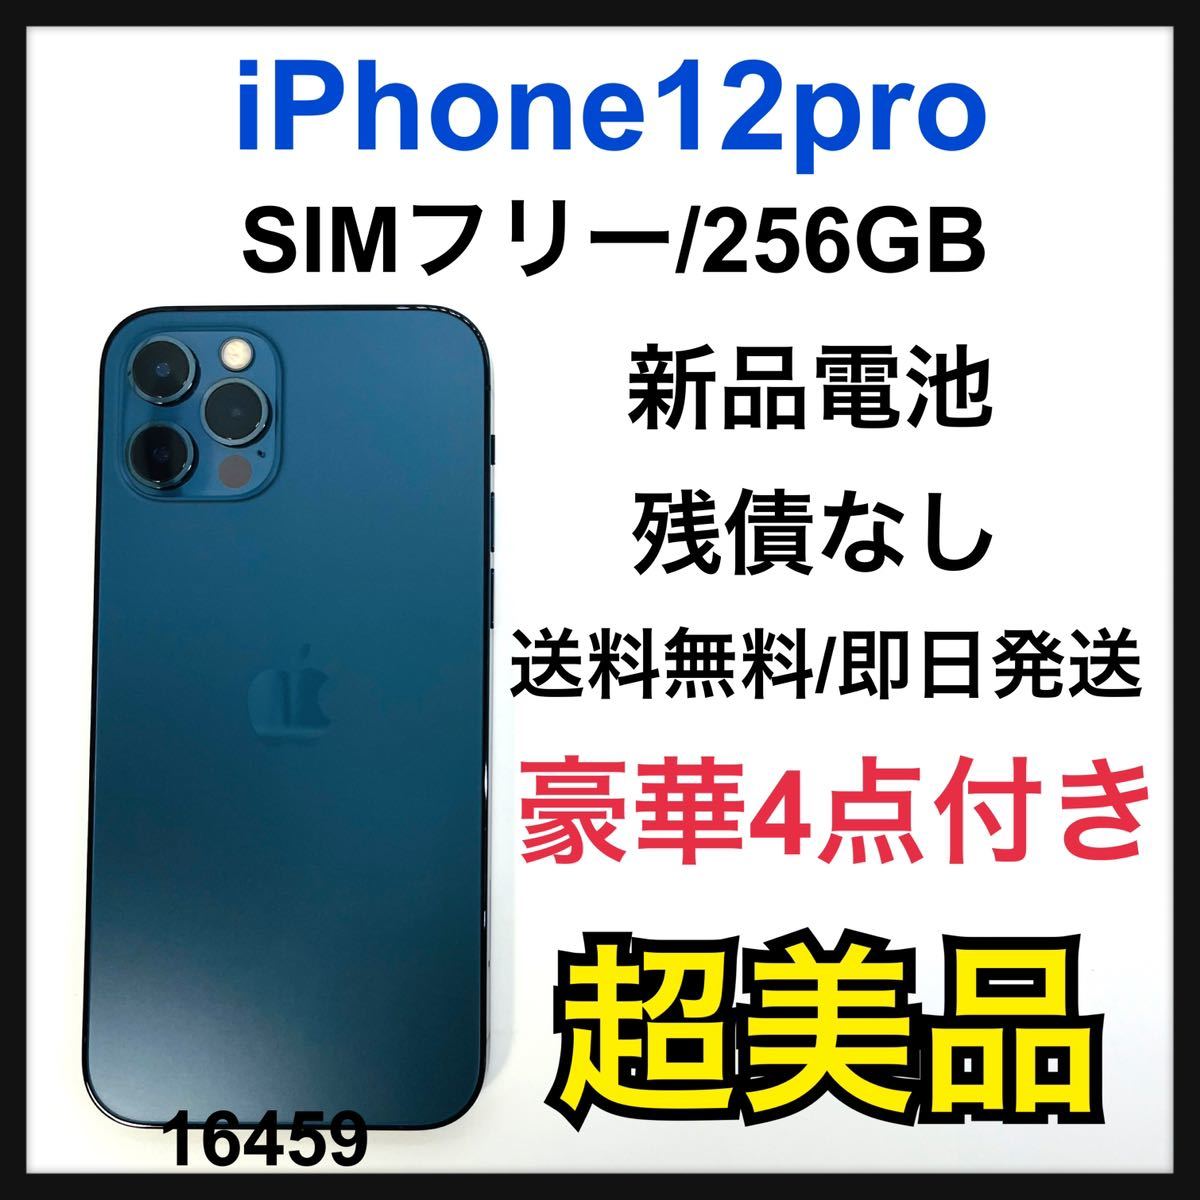 ファッション pro 12 iPhone S パシフィックブルー SIMフリー GB 256